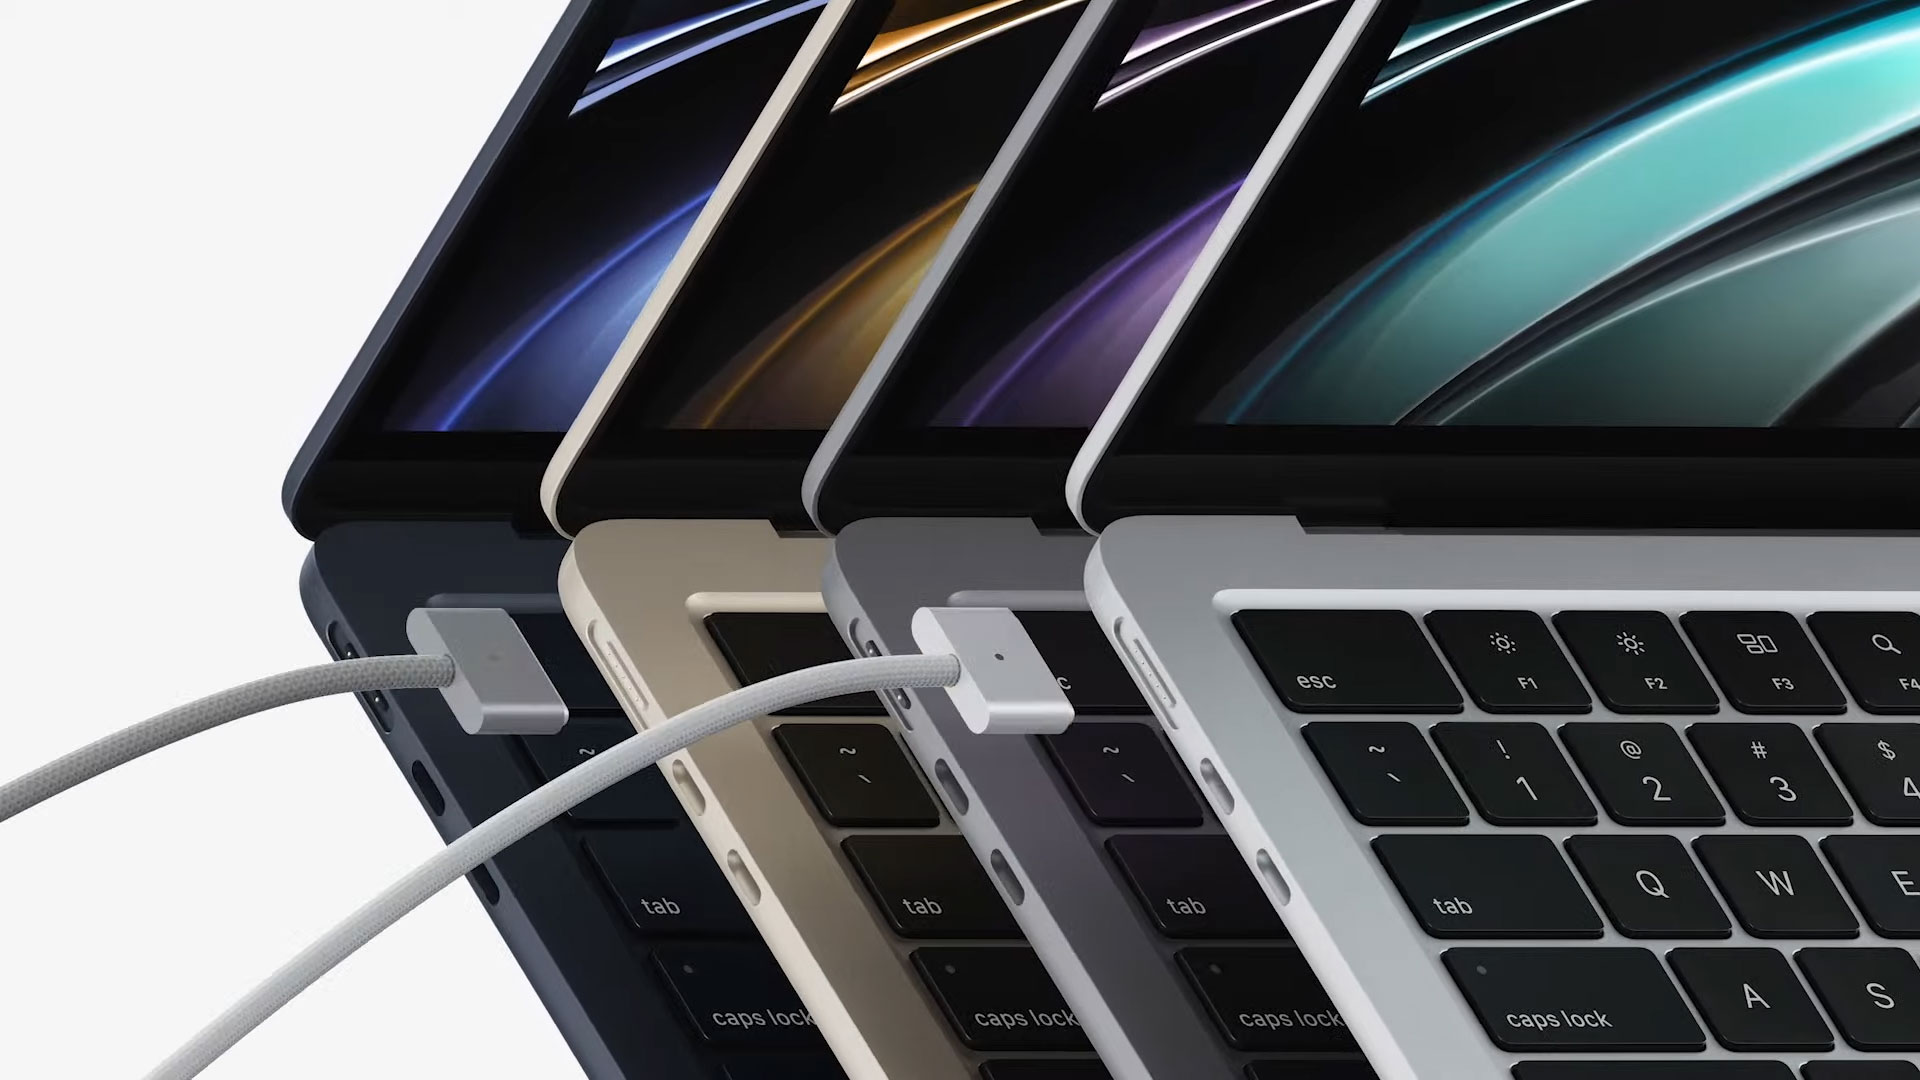 Ulaş Utku Bozdoğan: M2 İşlemciili Macbook Pro Ve Macbook Air Tanıtıldı 7